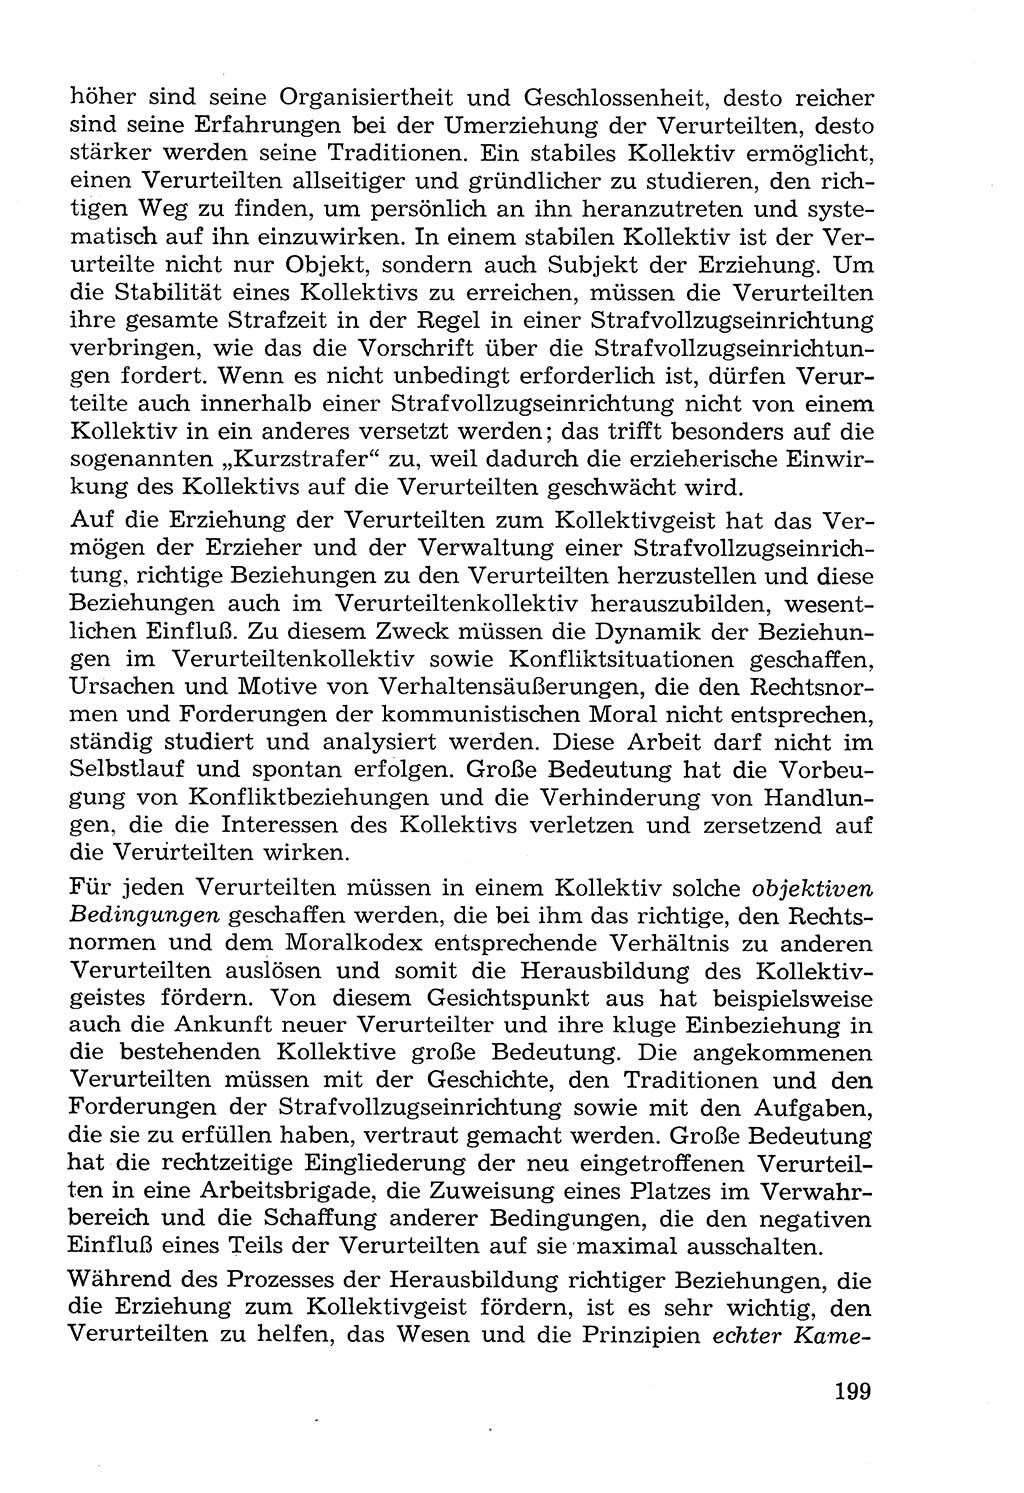 Lehrbuch der Strafvollzugspädagogik [Deutsche Demokratische Republik (DDR)] 1969, Seite 199 (Lb. SV-Pd. DDR 1969, S. 199)